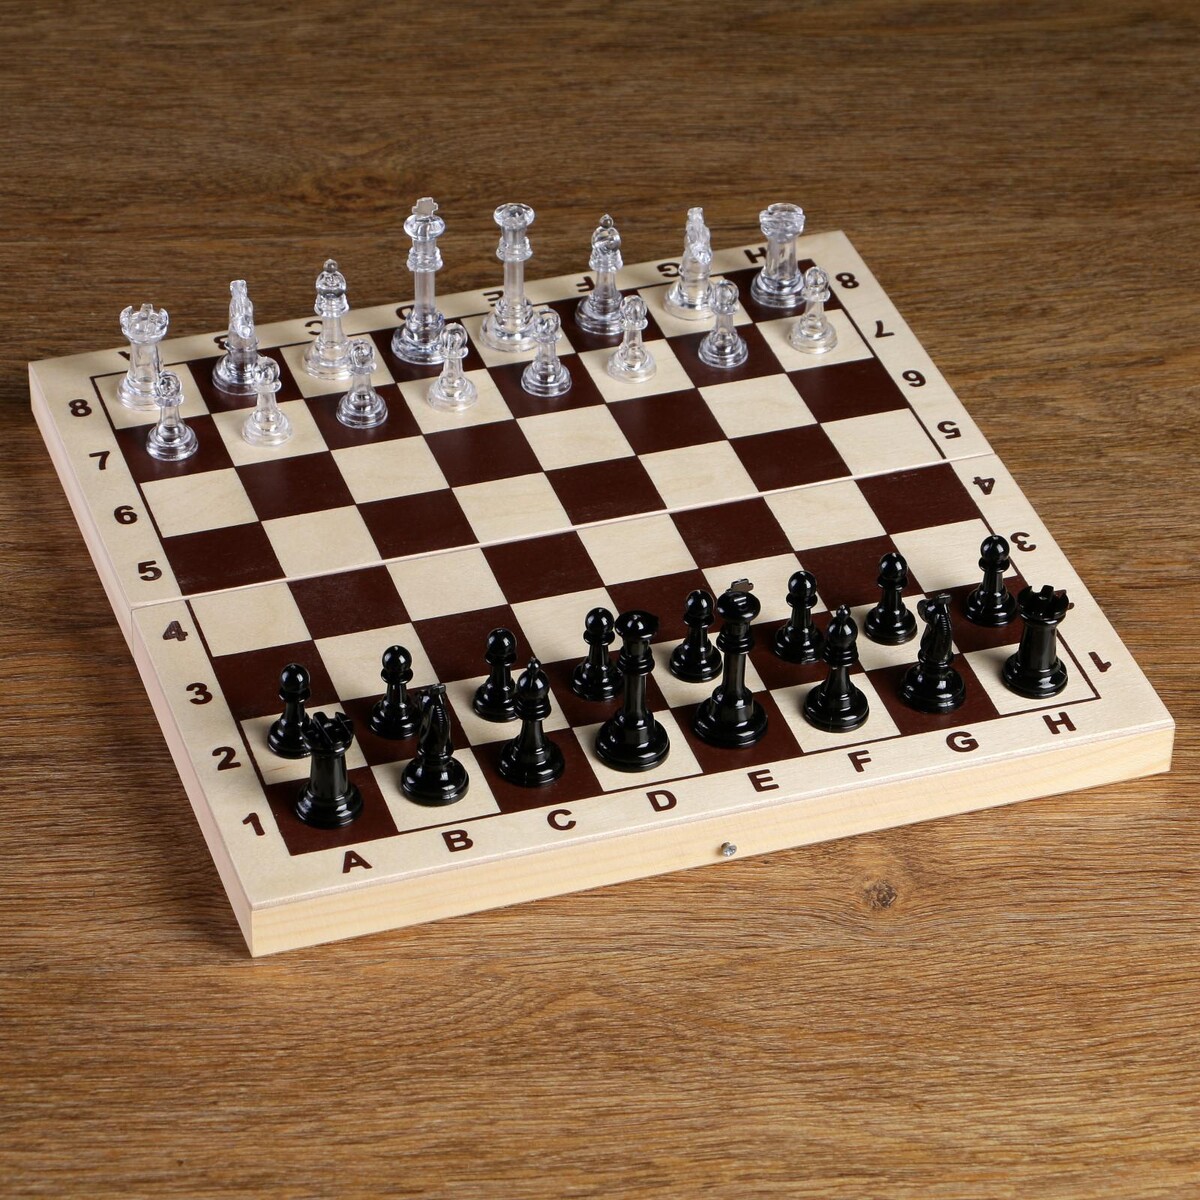 Шахматные фигуры, король h-5.8 см, пешка h-2.8 см титановый король